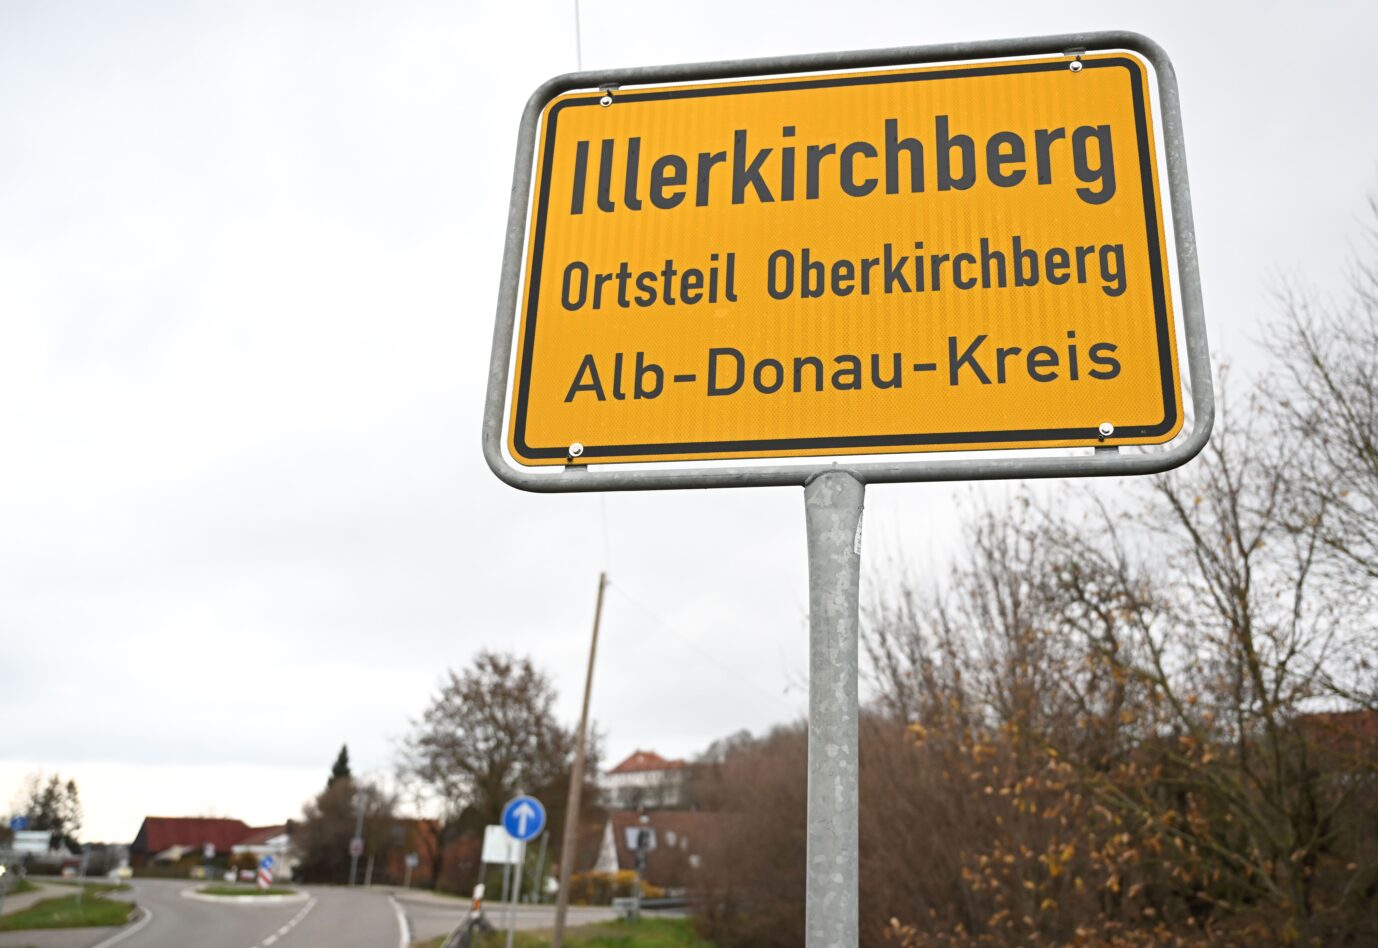 Das Ortsschild des Ortsteils Oberkichberg von Illerkirchberg. Zwei Mädchen wurden auf ihrem Schulweg angegriffen und schwer verletzt.